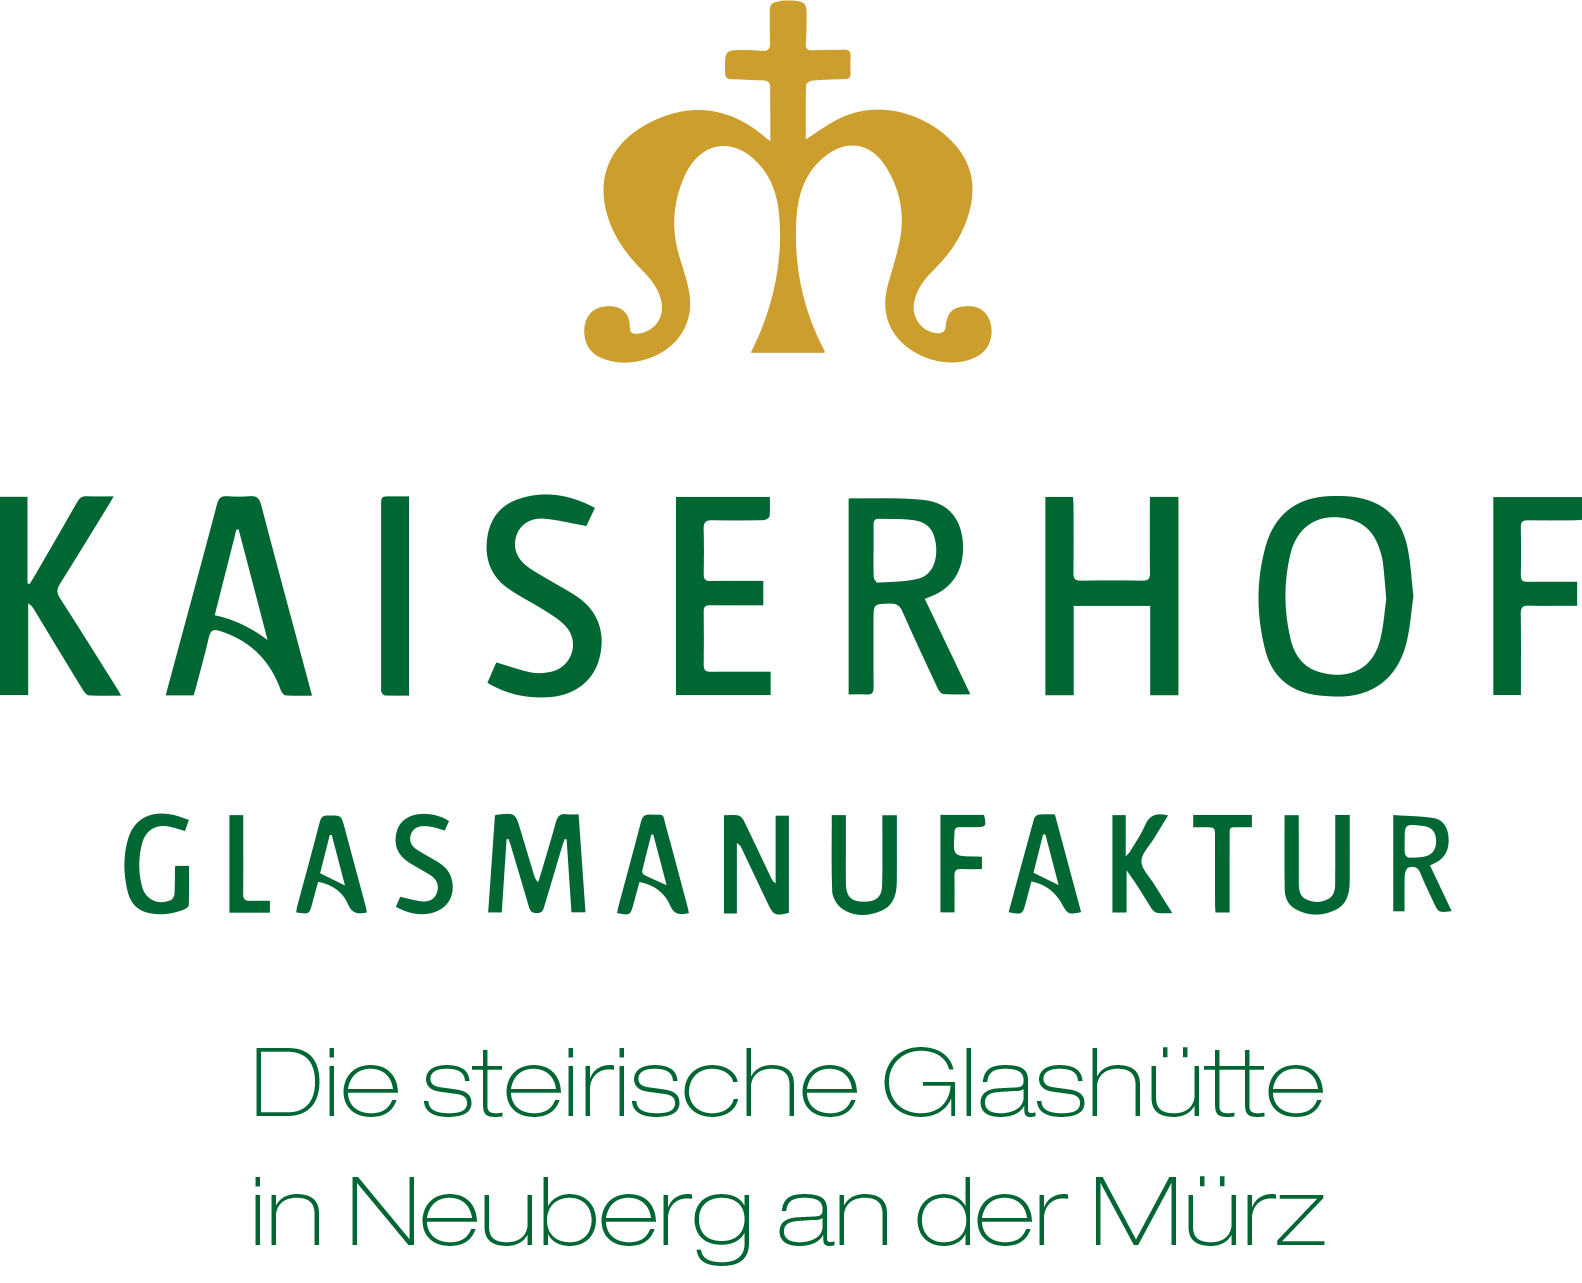 logo-kaiserhof-glasmanufaktur-glashtte-vektor-1